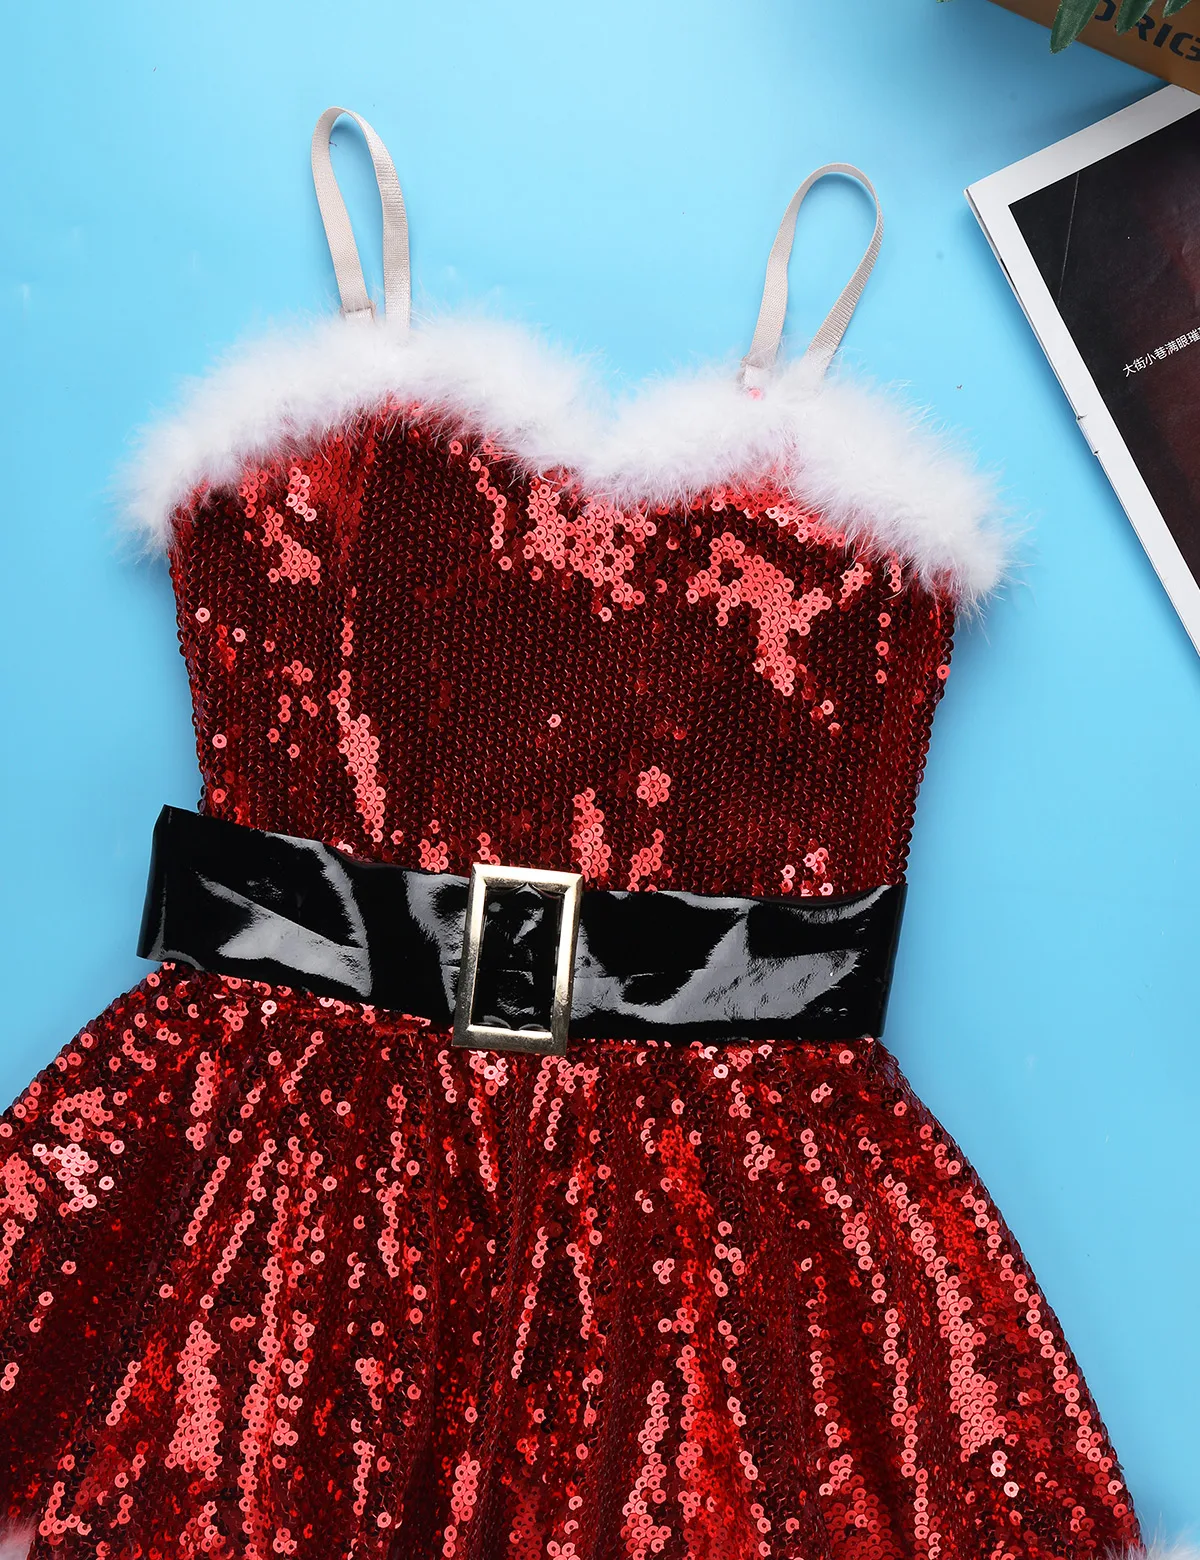 Детское праздничное платье для девочки вечерние Рождественский Санта танцевальный костюм наряд с пайетками, Фигурное катание на коньках